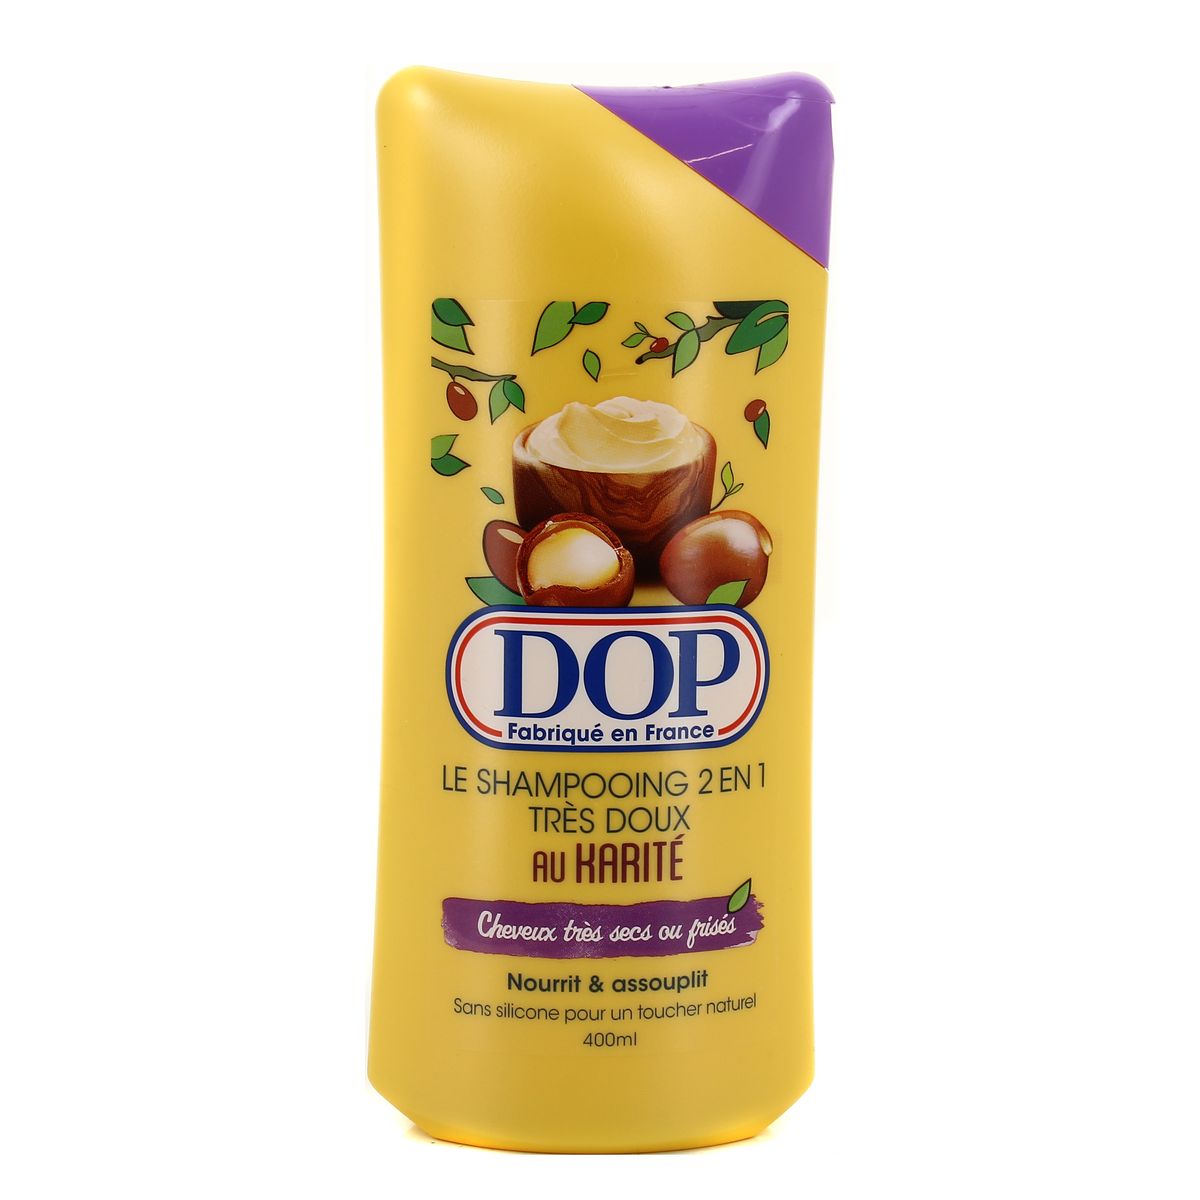 Dop Shampooing 2en1 très doux au beurre karité 400ml